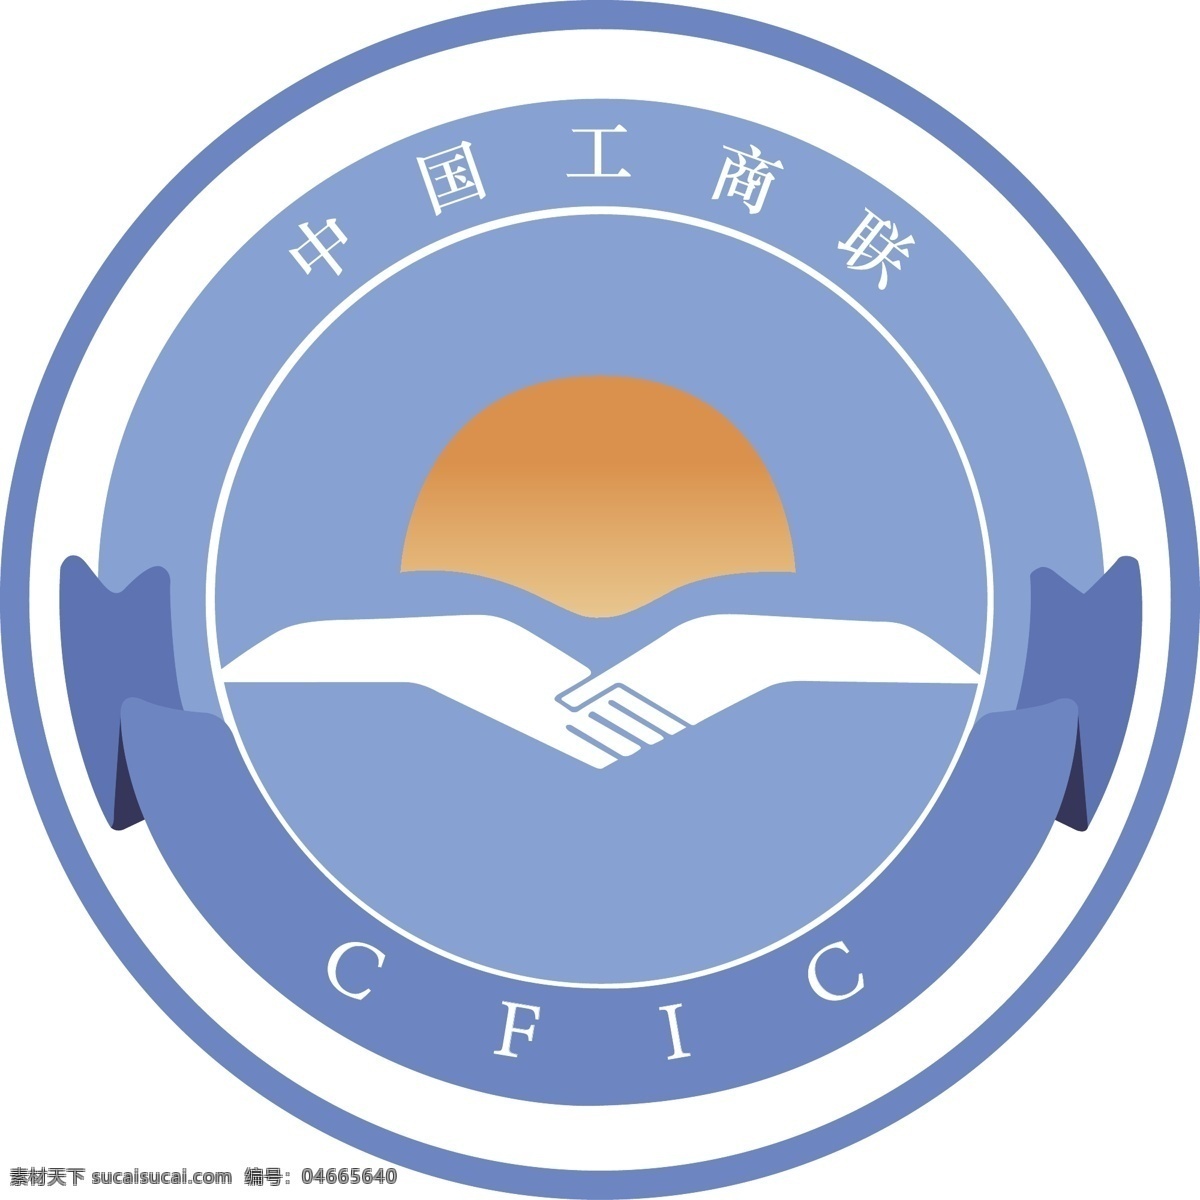 中国工商联 标志 logo 工商联 行业标志 标志图标 公共标识标志